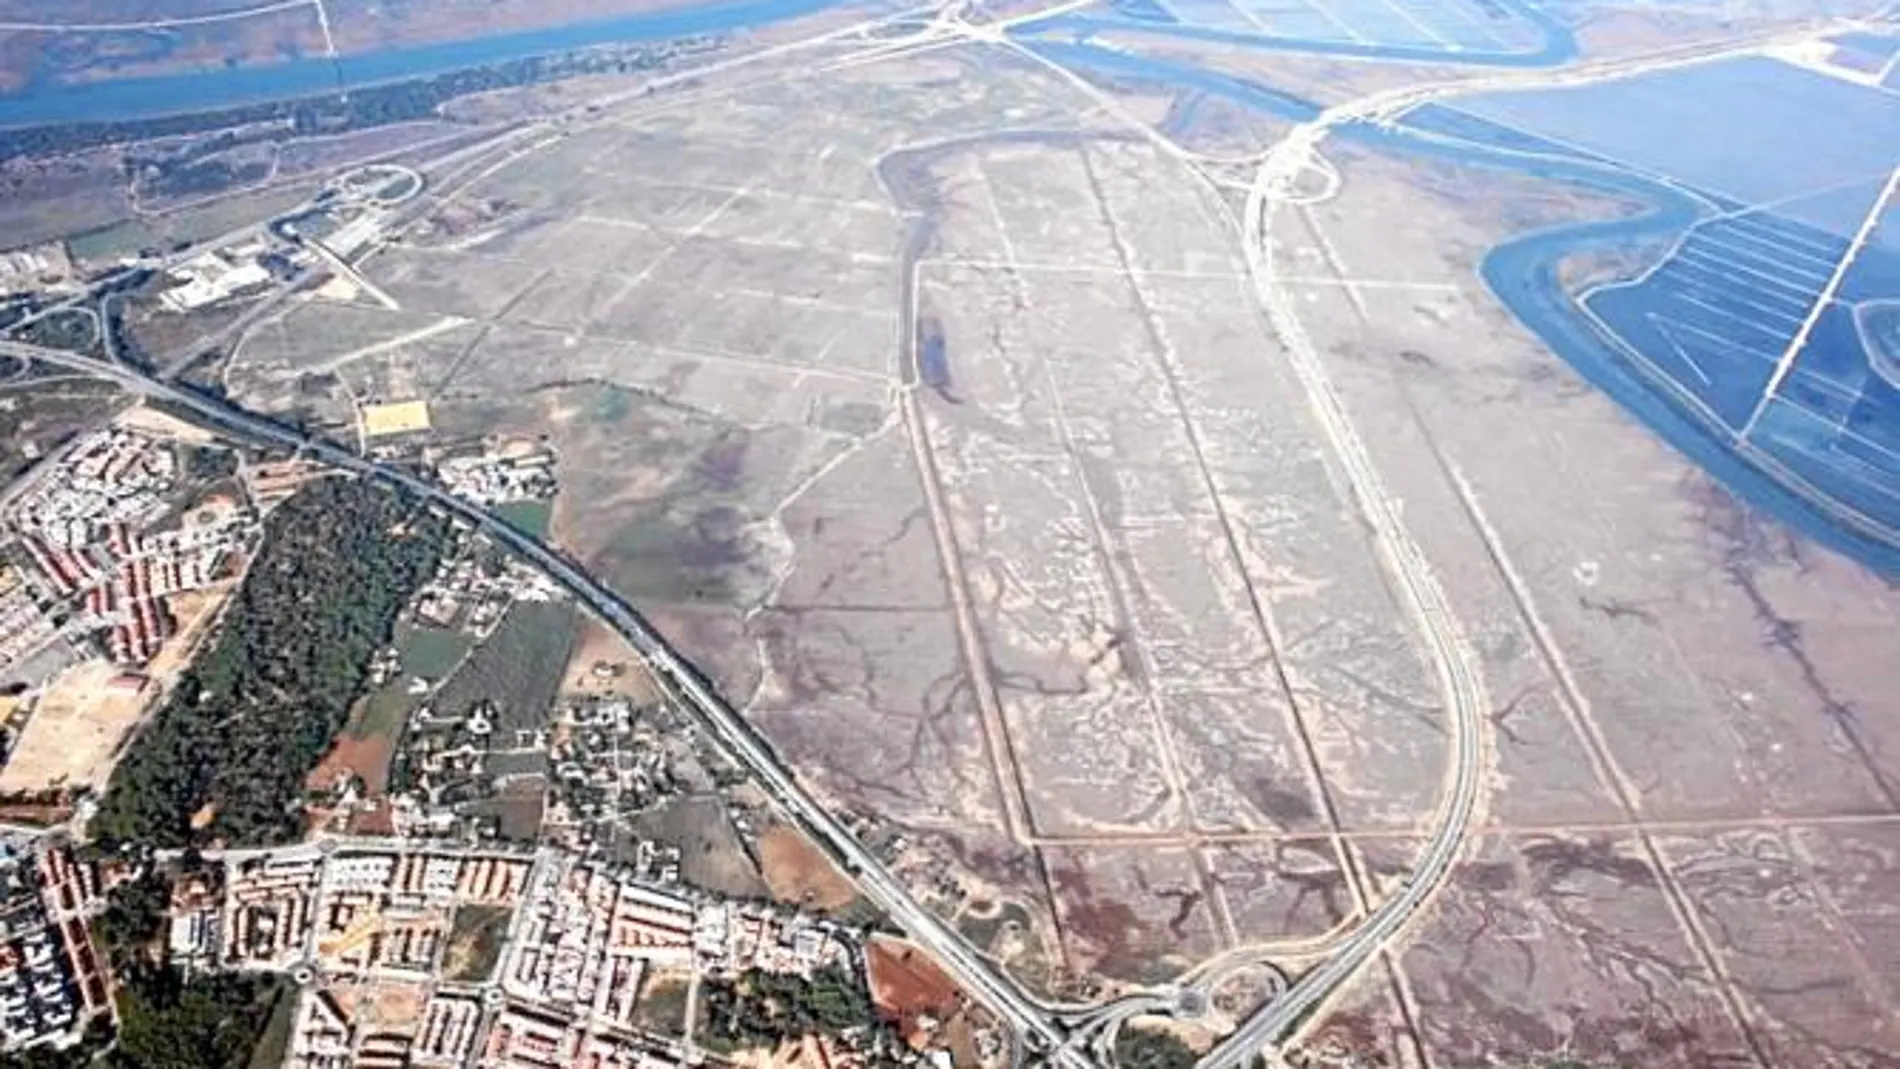 Vista aérea de los terrenos en los que estaba previsto construir el complejo industrial